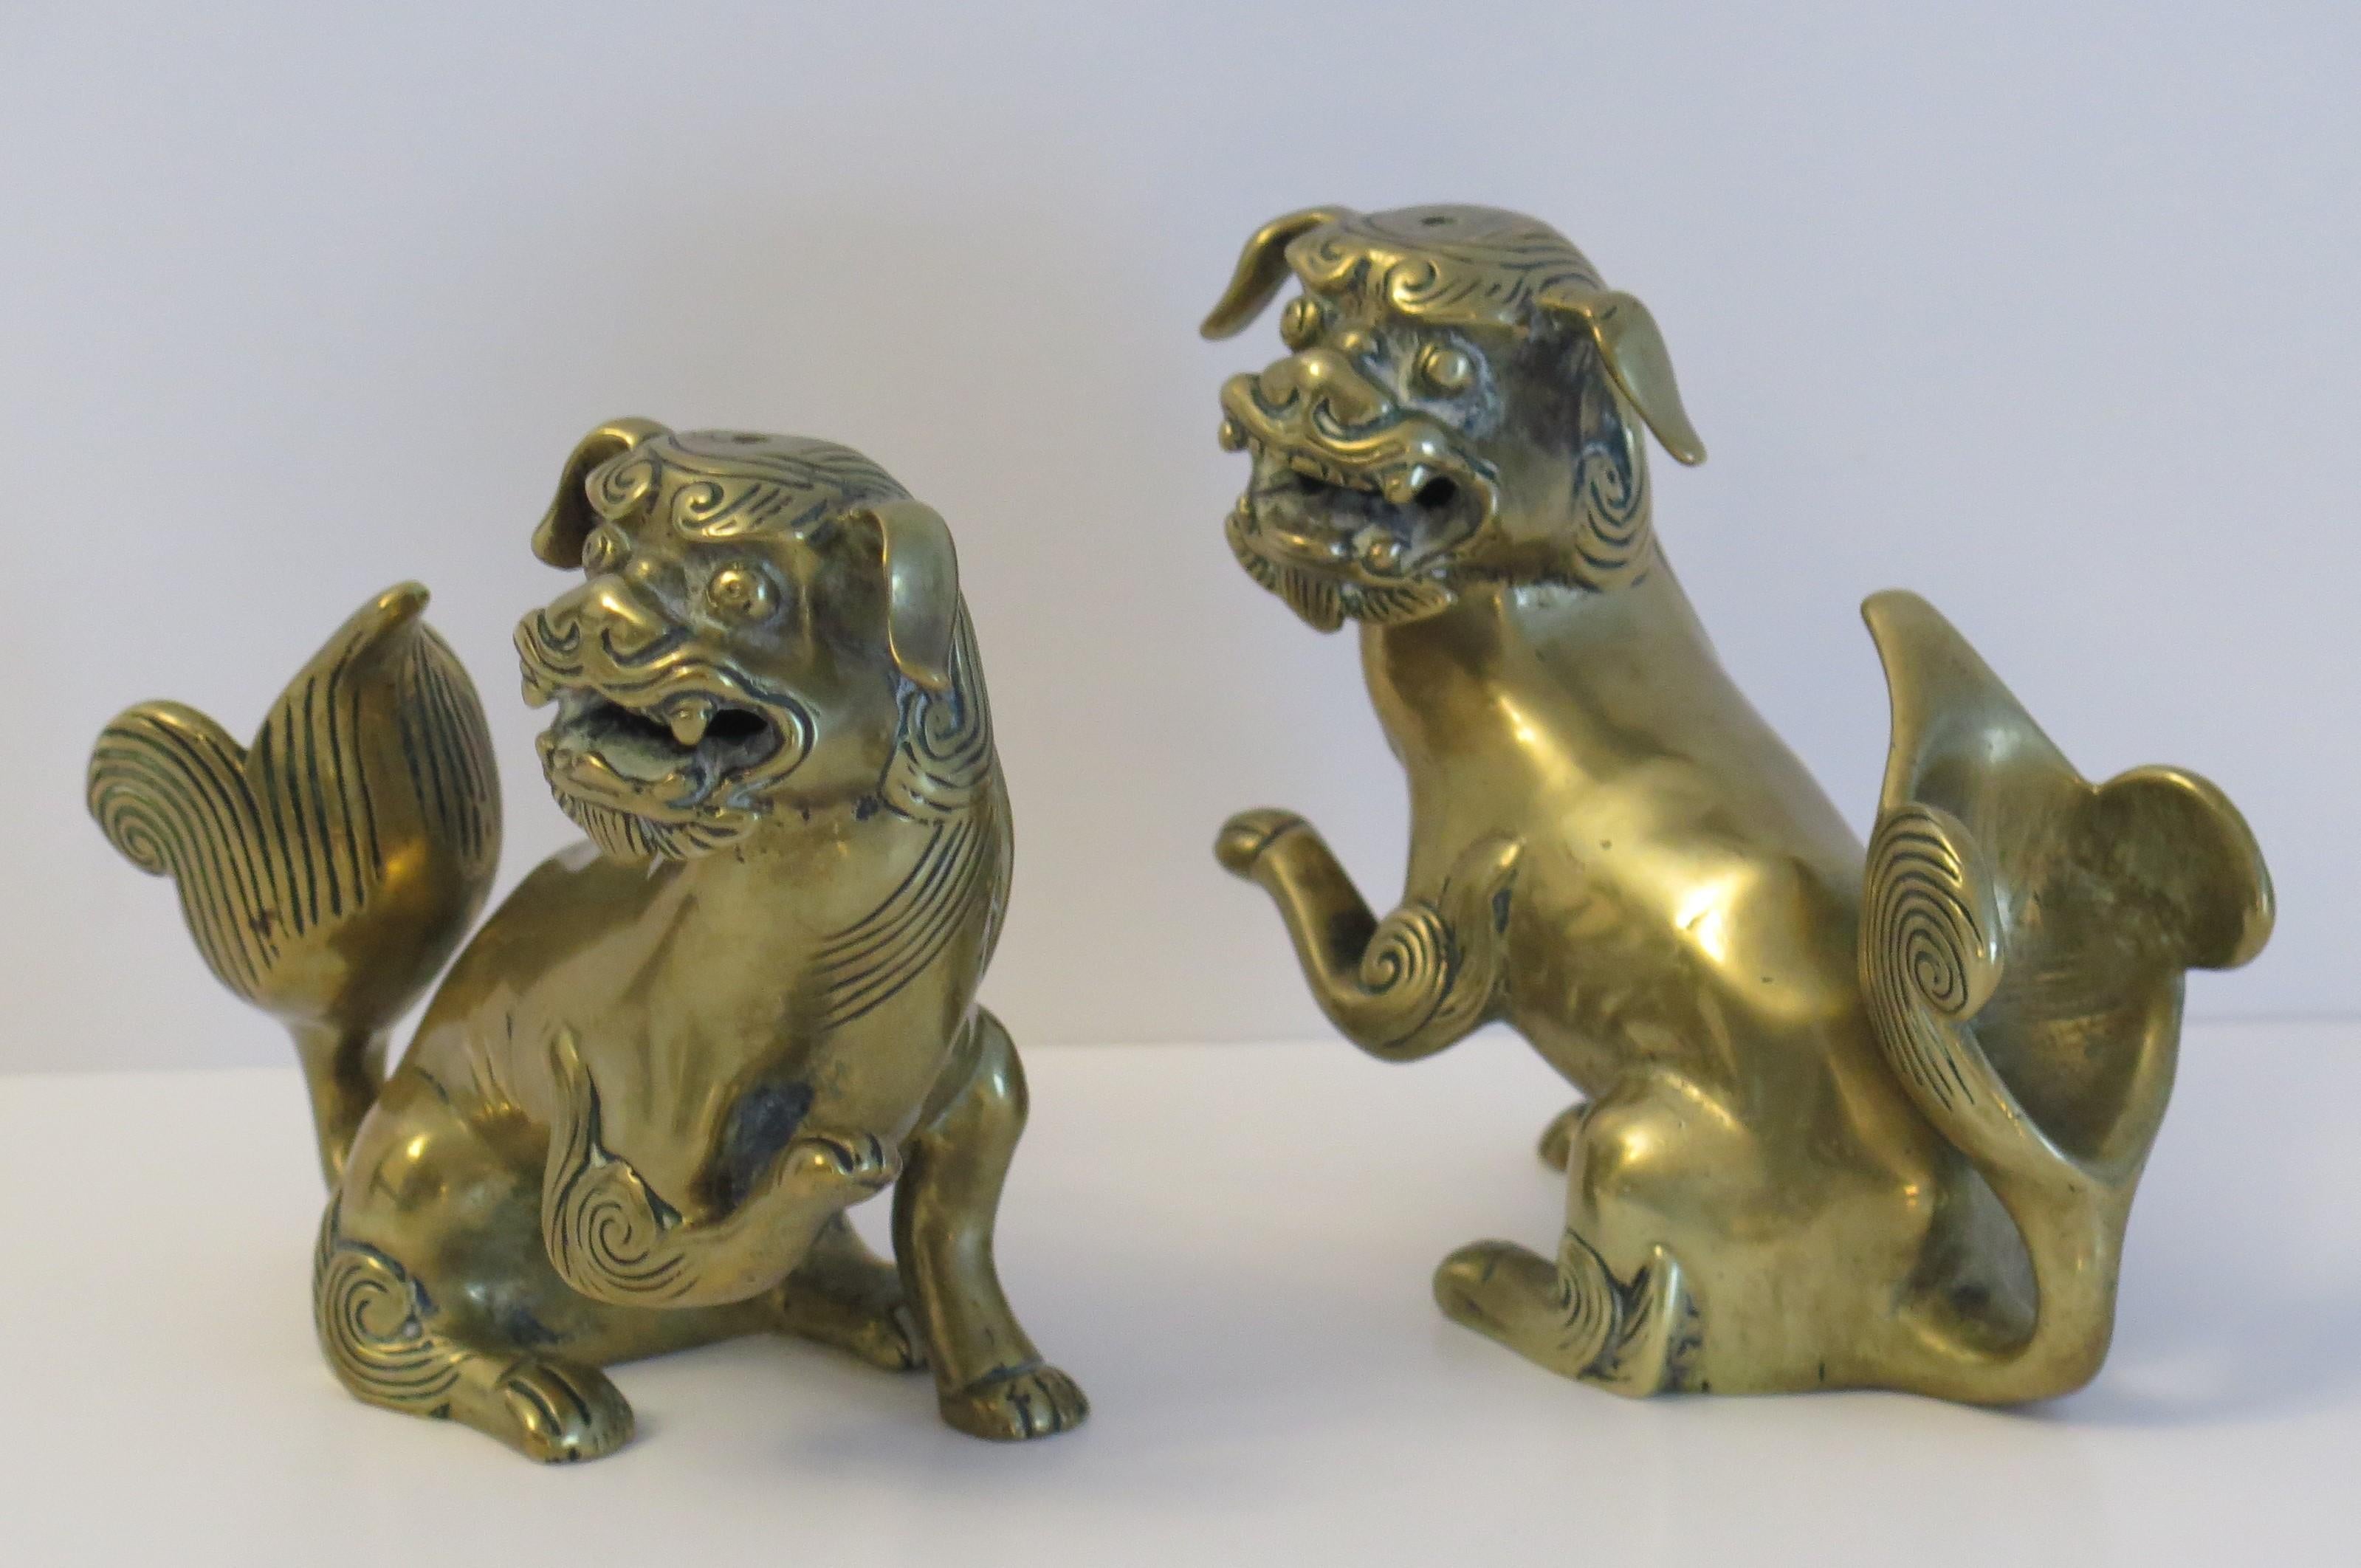 Es handelt sich um ein sehr gutes Paar antiker chinesischer Foo- oder Löwenhund-Skulpturen, manchmal auch als Tempellöwen bezeichnet, aus einer Messing-Bronze-Metalllegierung, mit ausgezeichneten Details, die auf das frühe 19. Jahrhundert, die